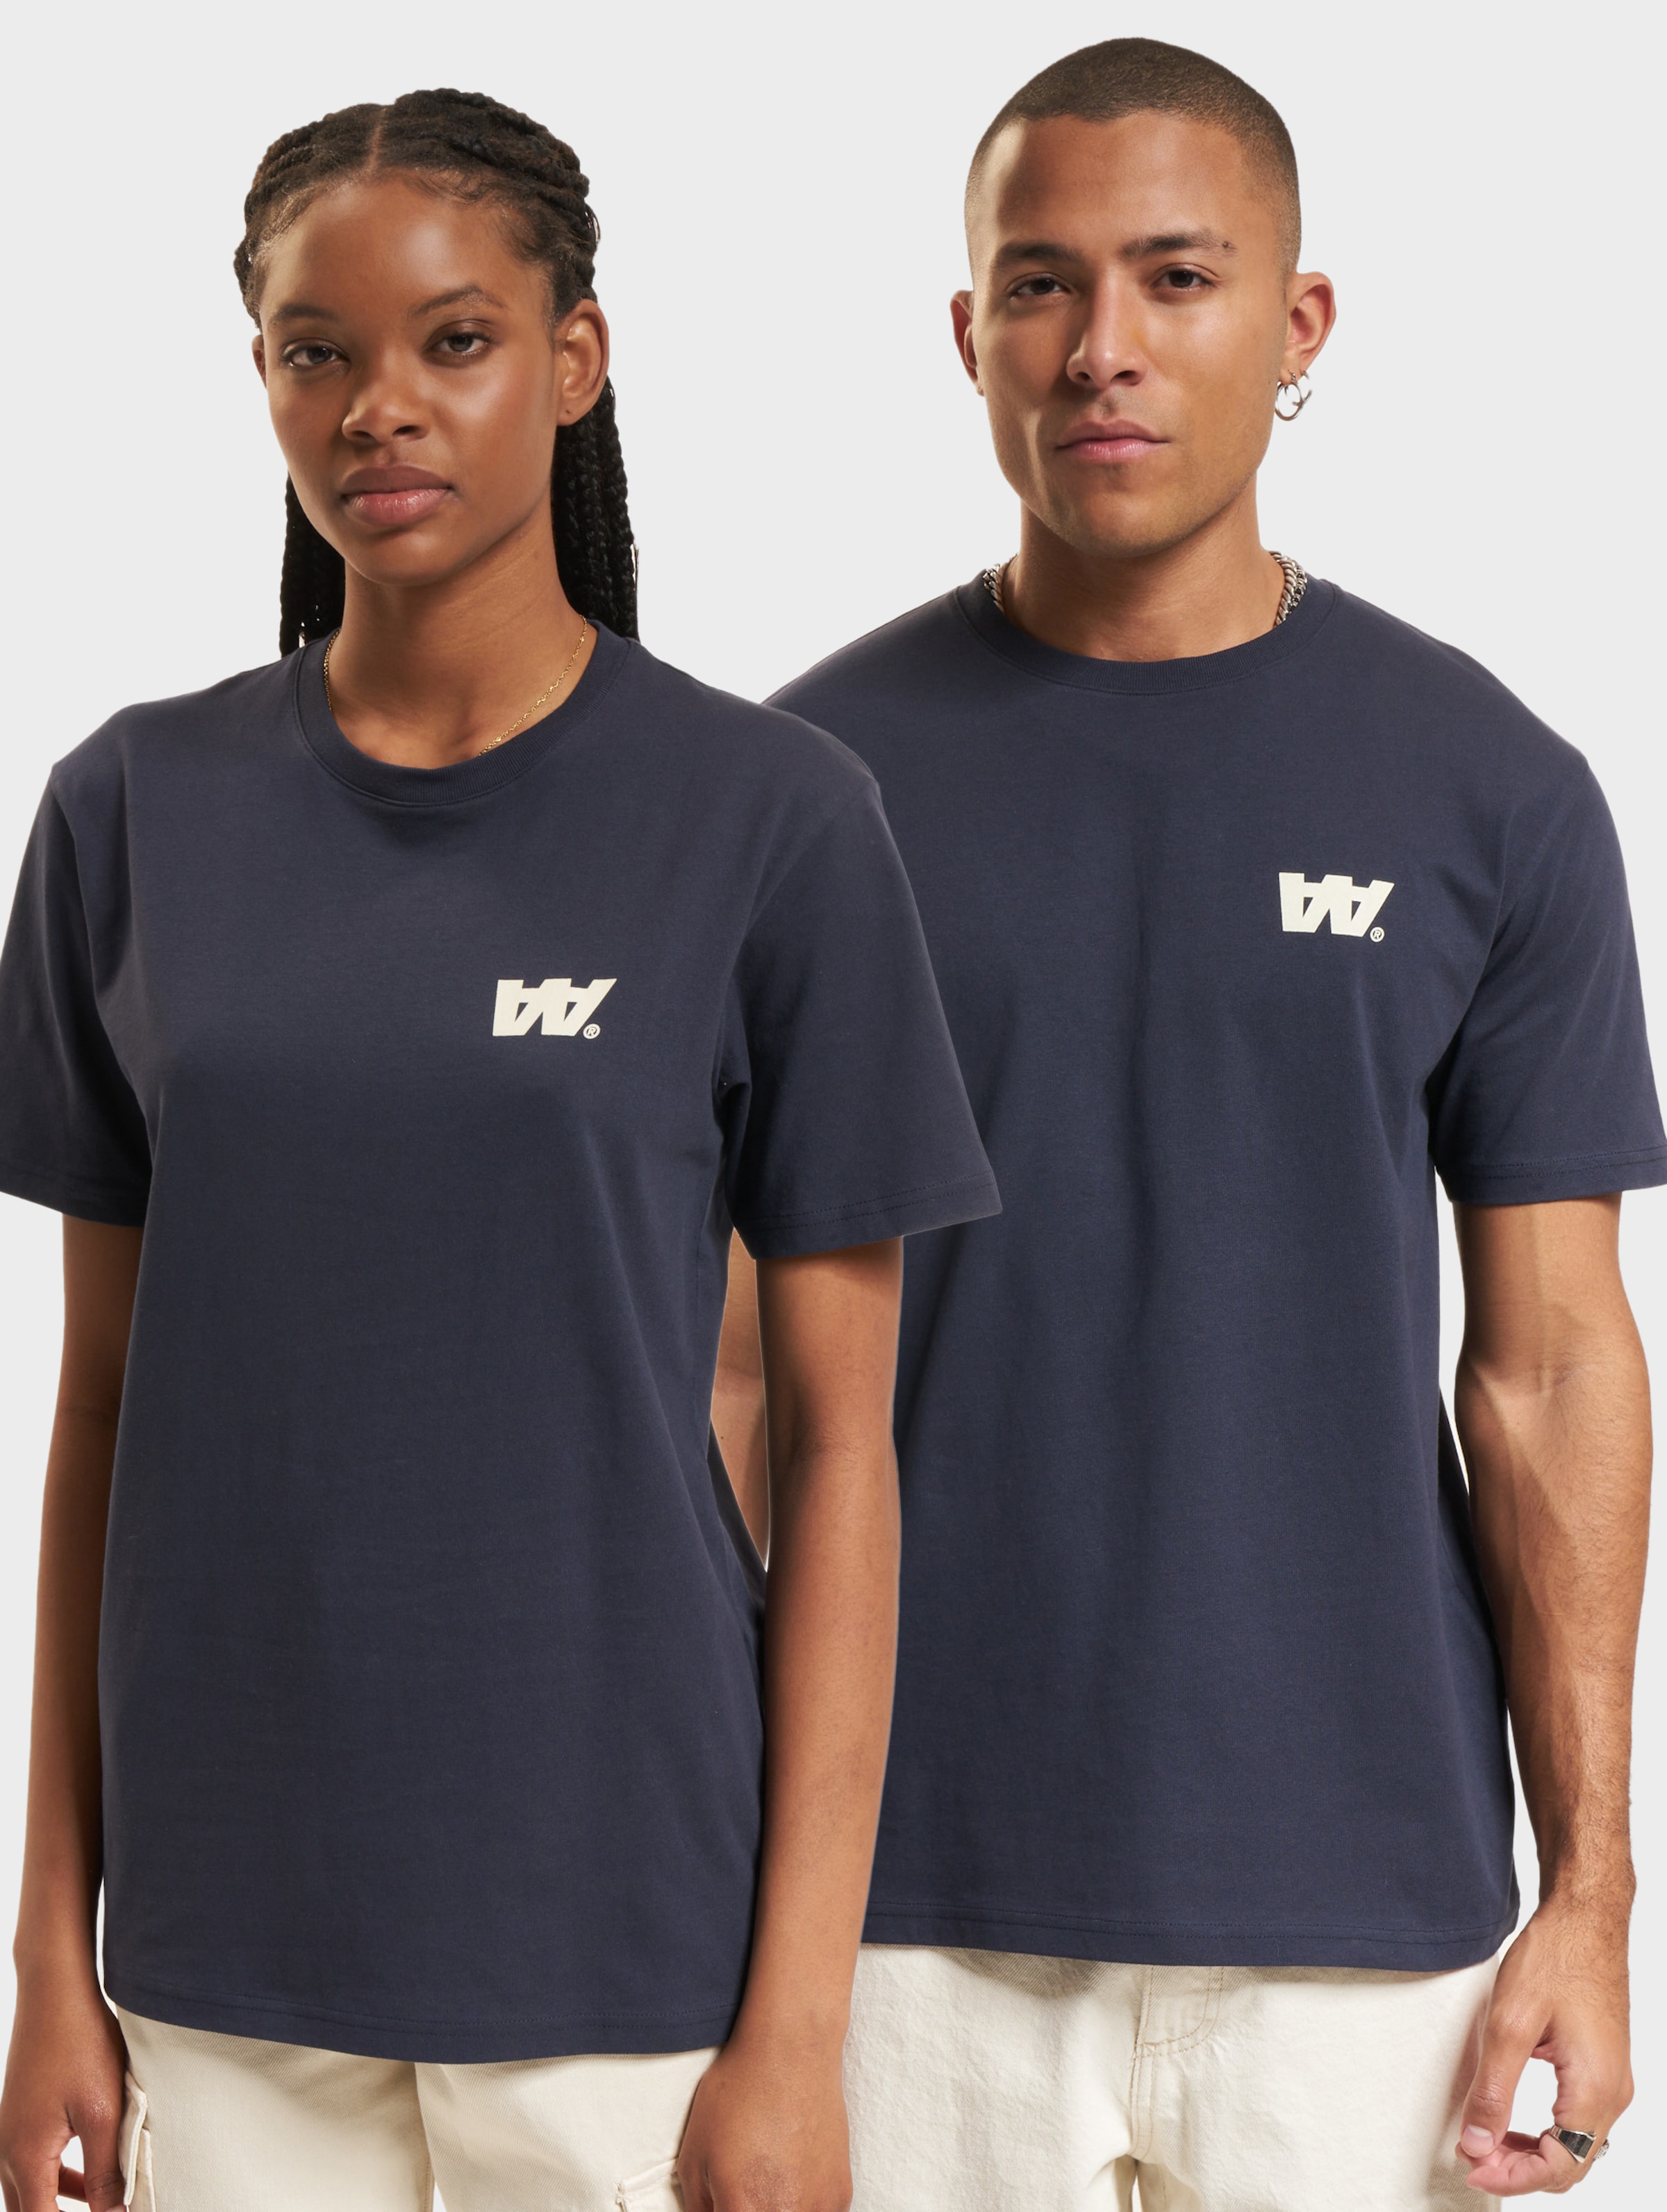 Wood Ace Letter T-Shirt Frauen,Männer,Unisex op kleur blauw, Maat M